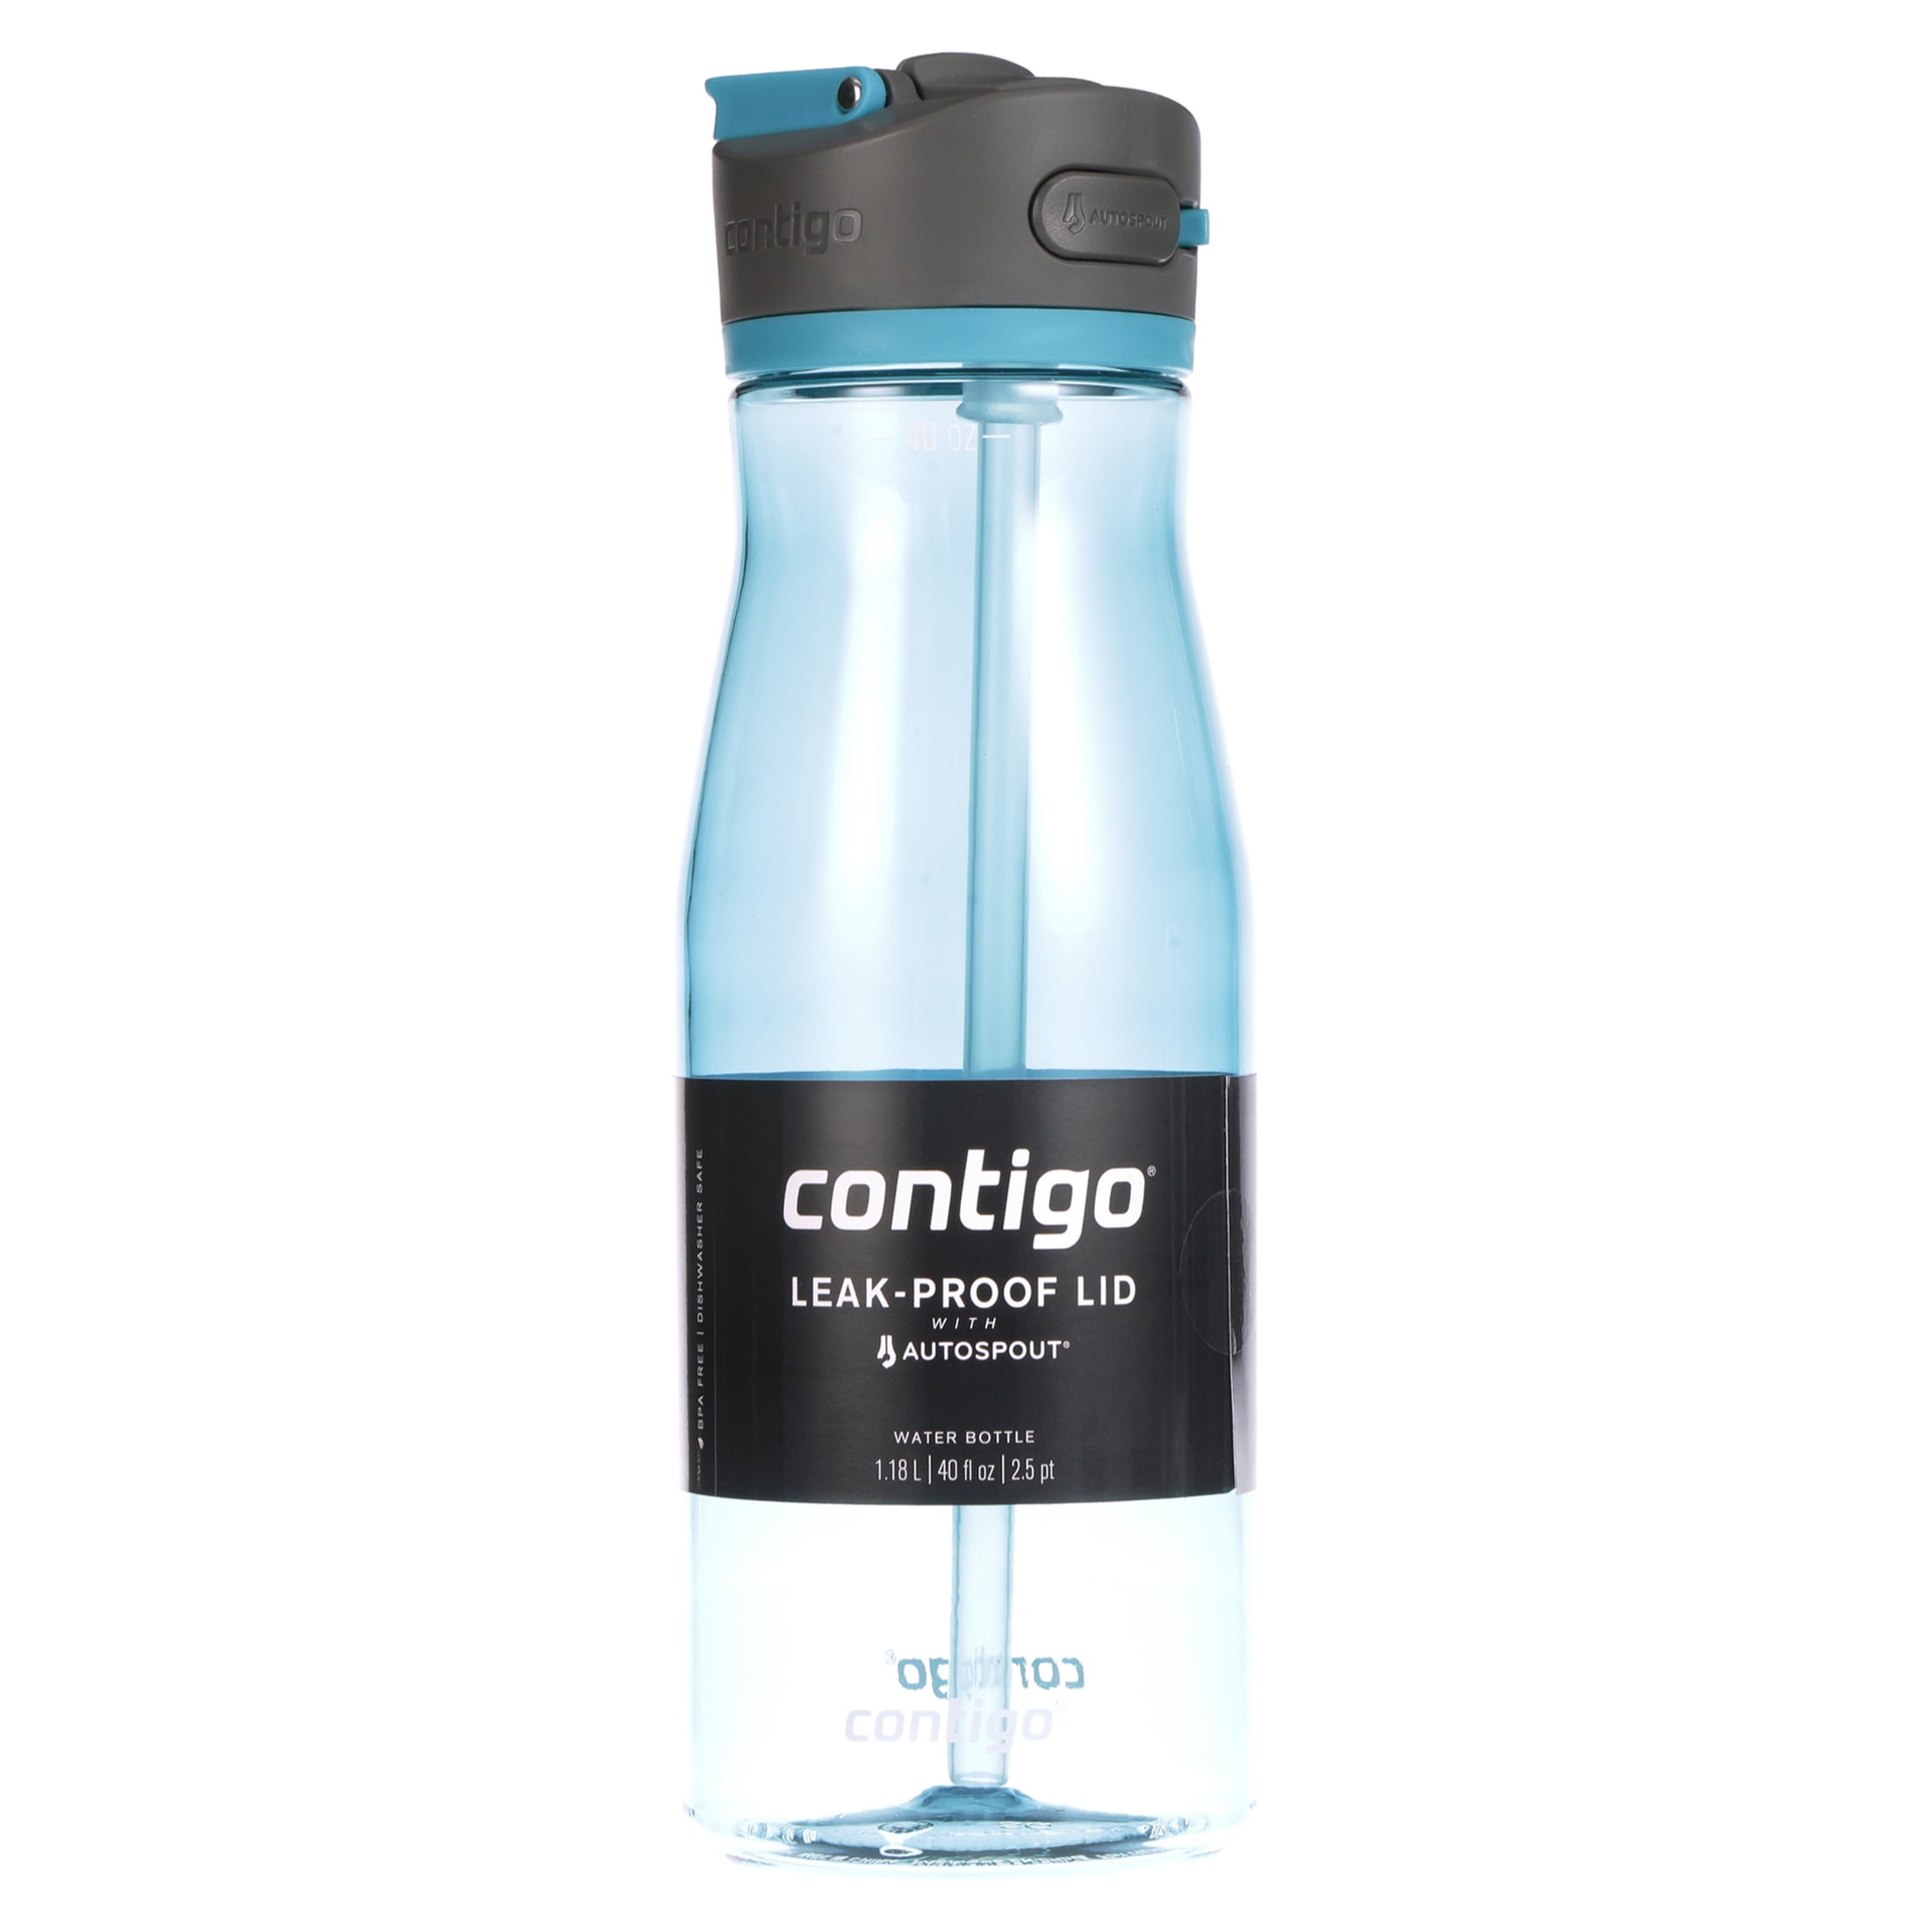 Contigo 24 oz. Ashland 2.0 Tritan Water Bottle 3-Pack - Juniper/Sake/Bubble Tea